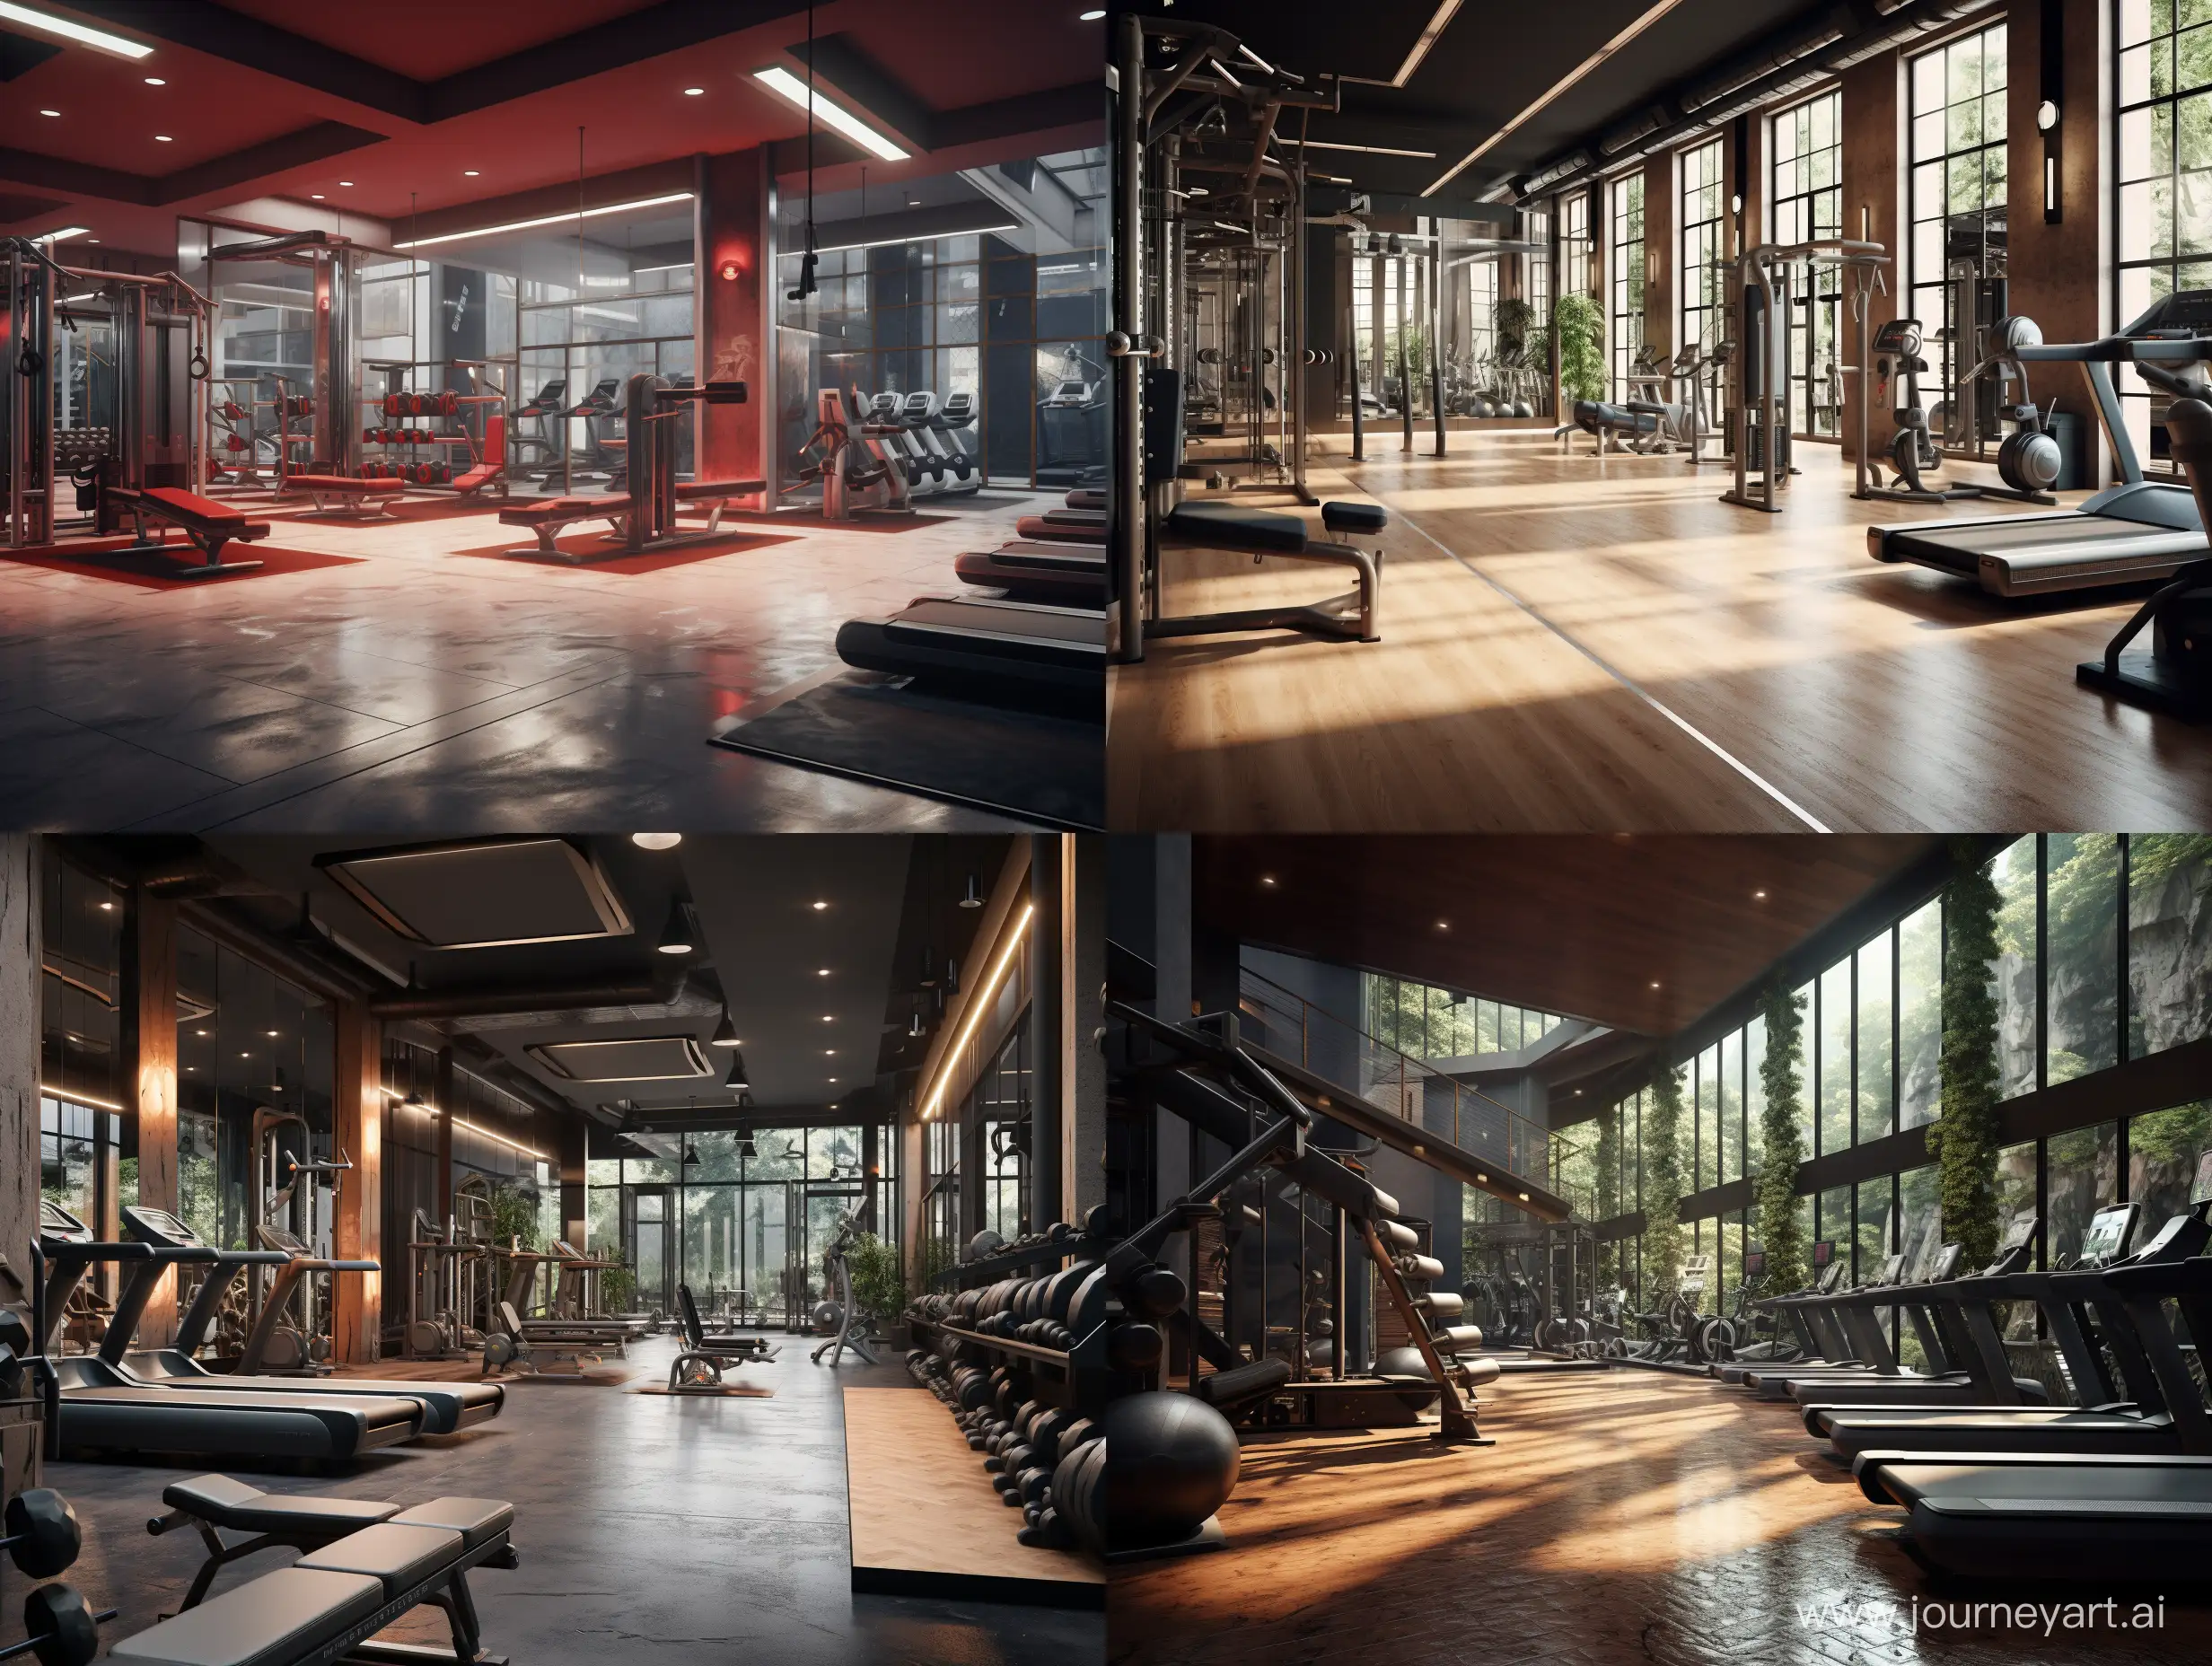 Spacious-Gym-Interior-with-Modern-Design-43-Aspect-Ratio